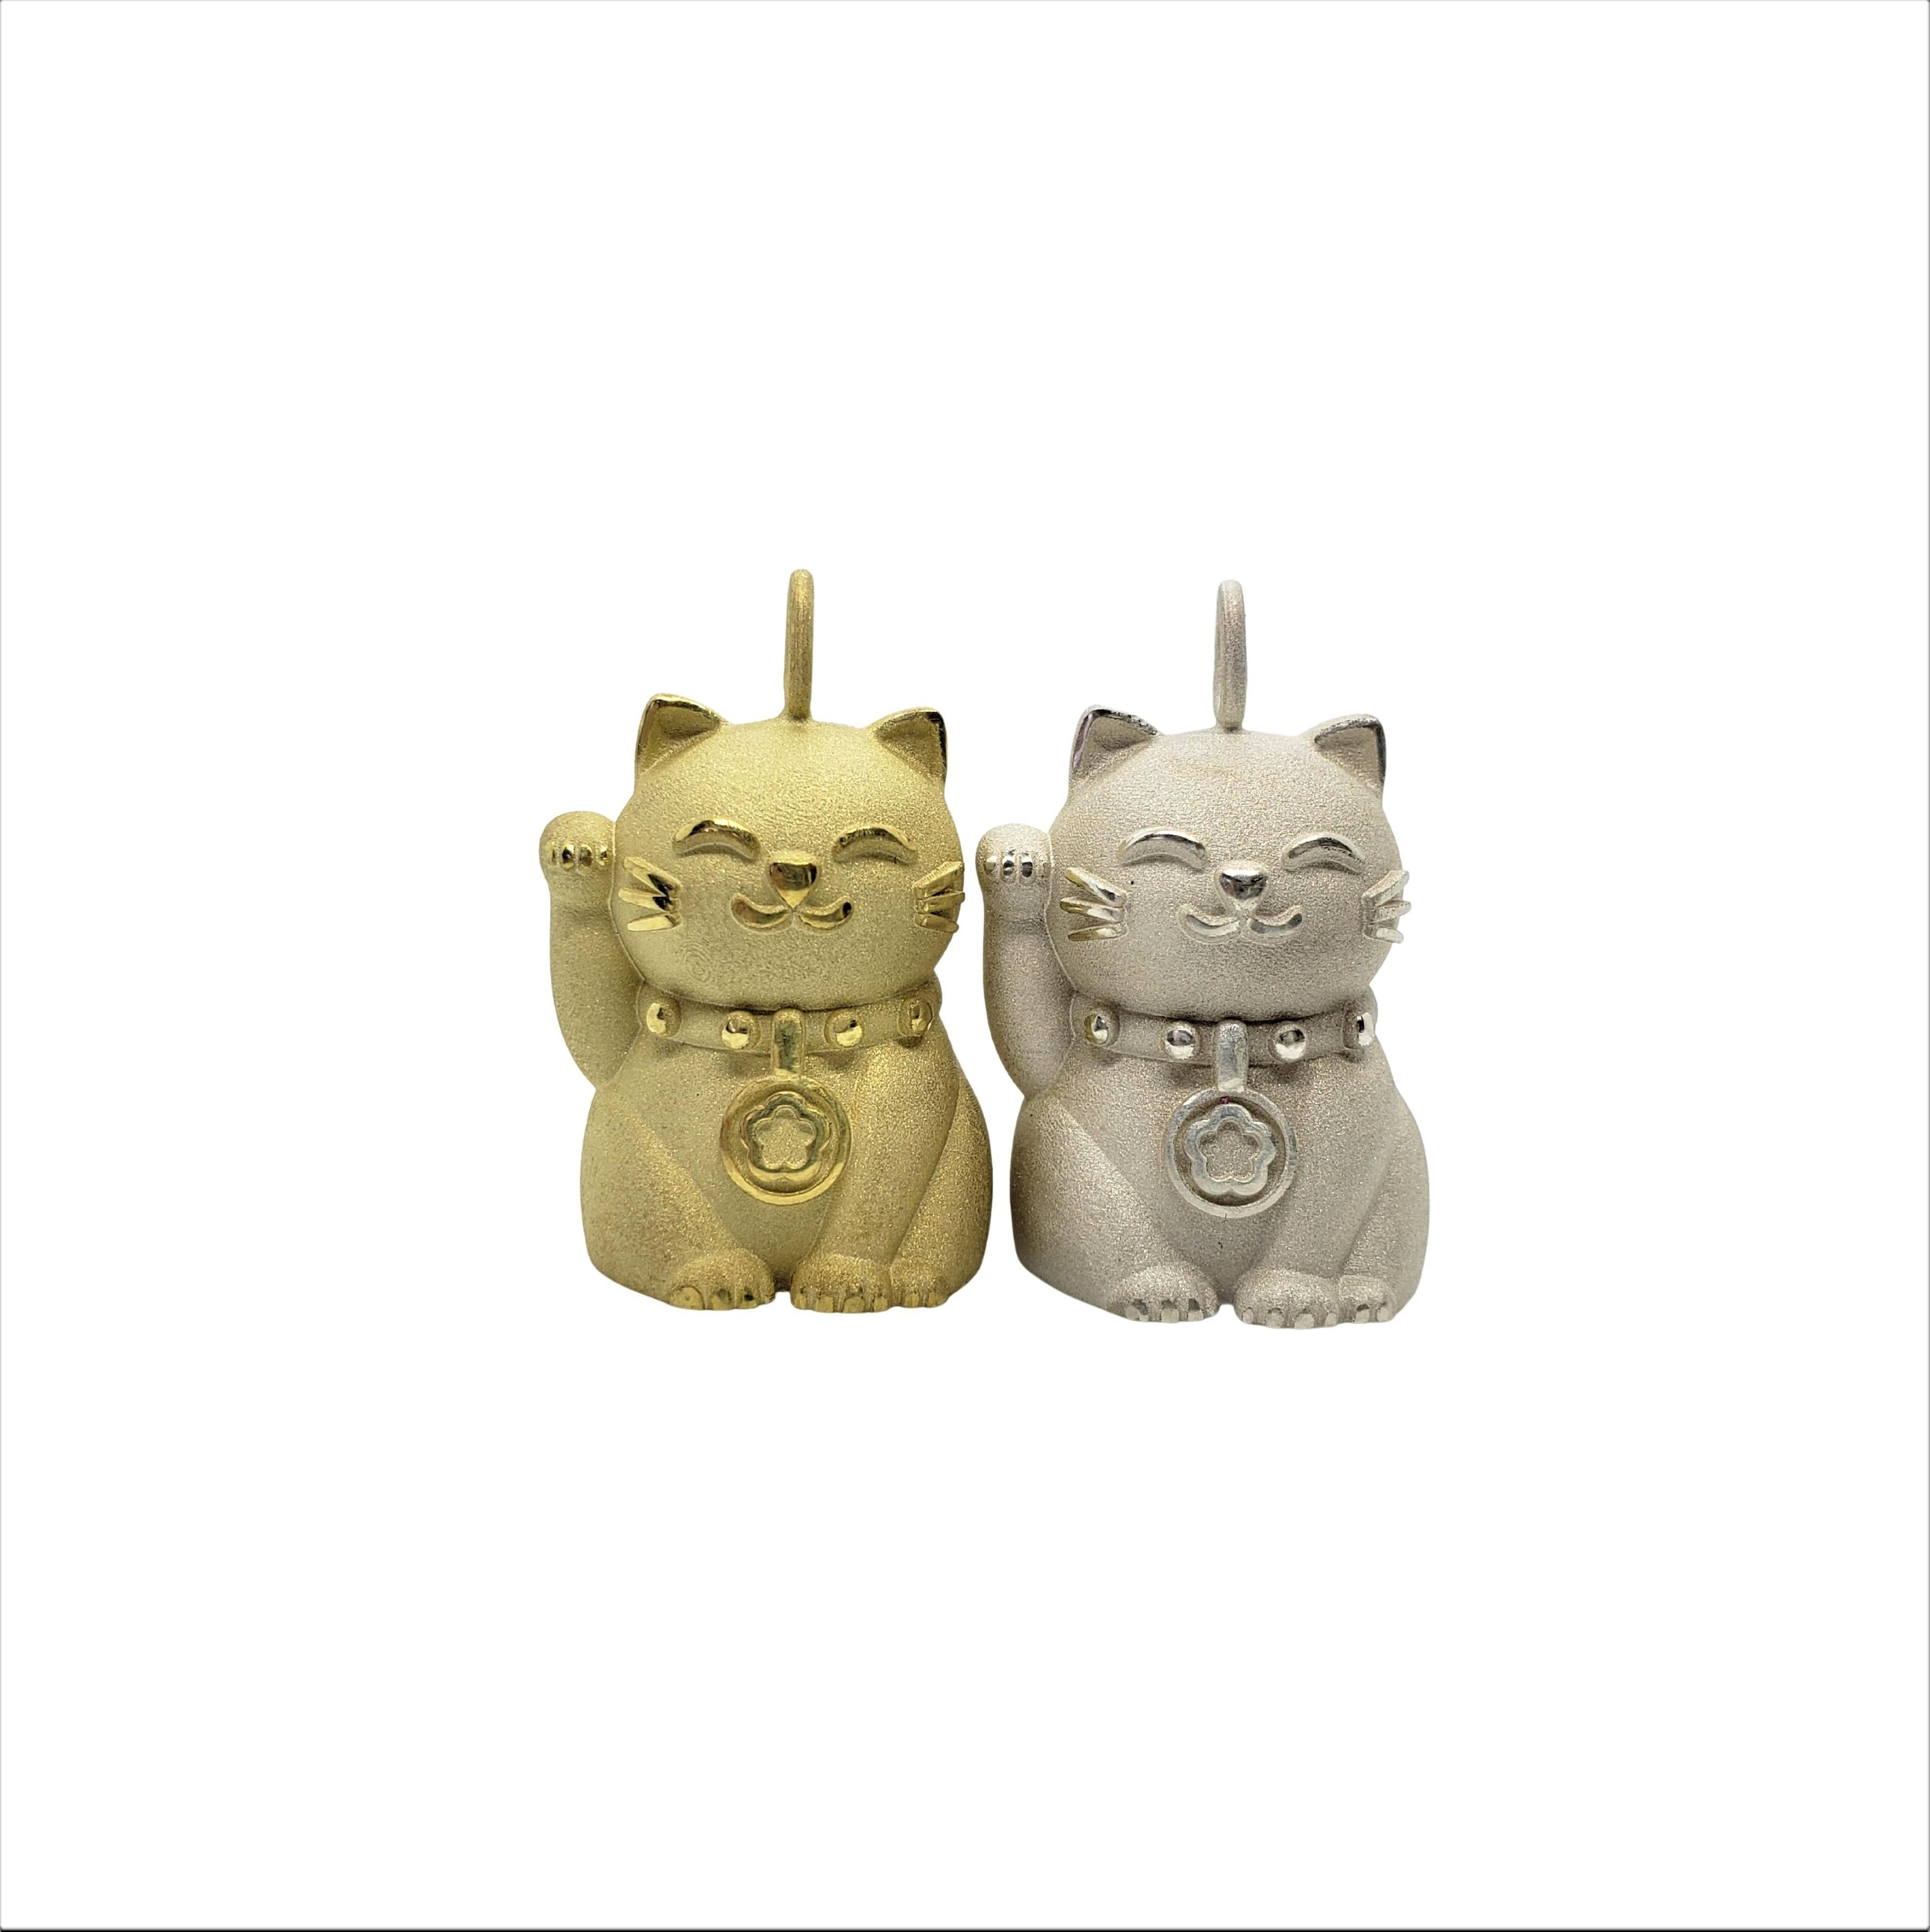 Mini Hope Cat aus Sterling Silber hat die perfekte Größe für einen Charme, und die zusätzliche 18-karätige Vergoldung verleiht einen besonderen Charme. Die Maneki Neko ist als japanische Begrüßungskatze bekannt, die Wohlstand, Liebe, Glück und